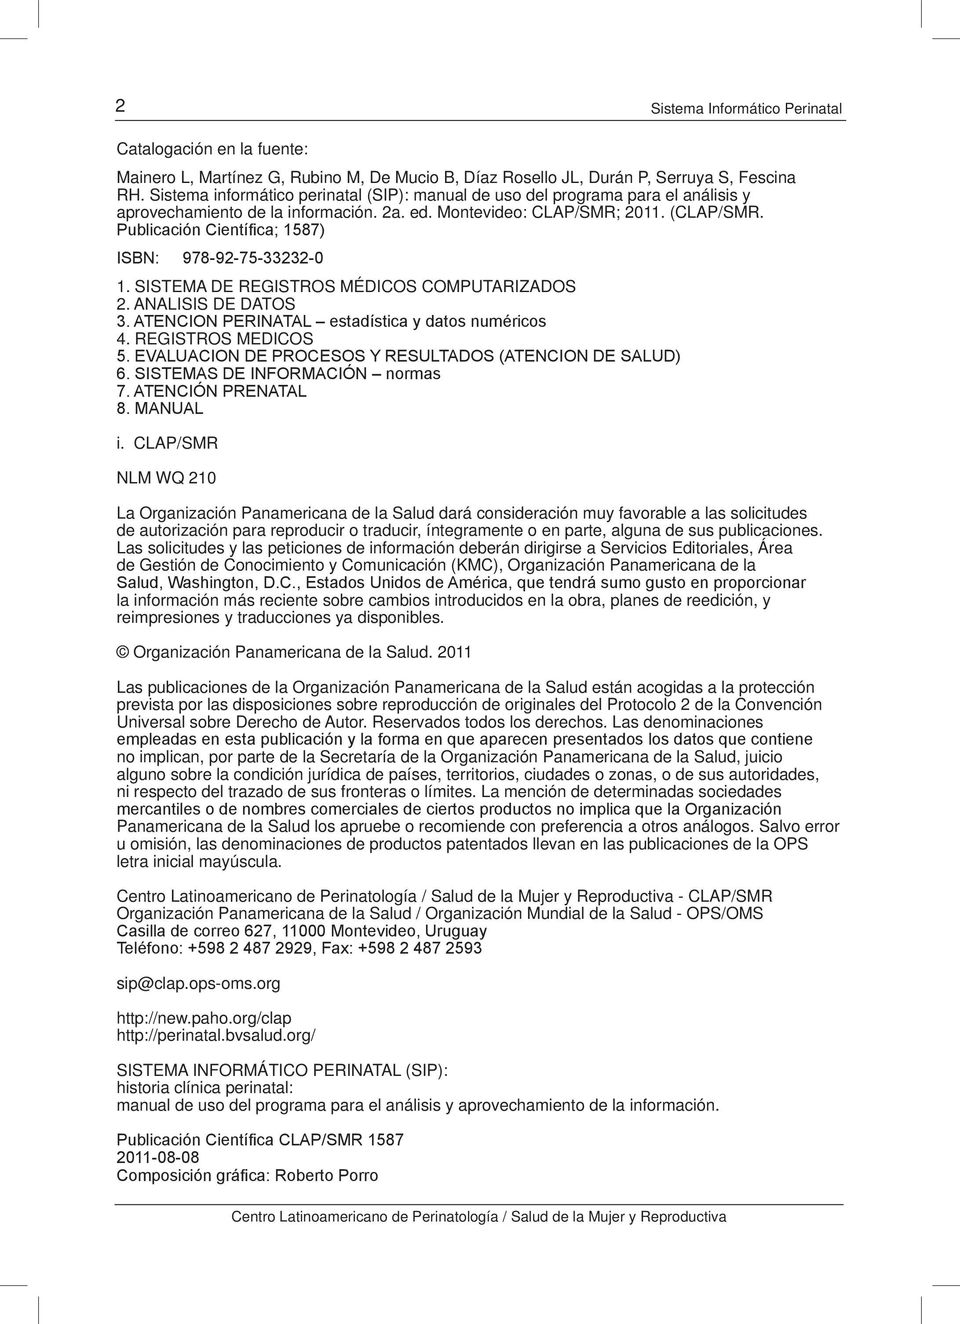 SISTEMA DE REGISTROS MÉDICOS COMPUTARIZADOS 2. ANALISIS DE DATOS 4. REGISTROS MEDICOS i.